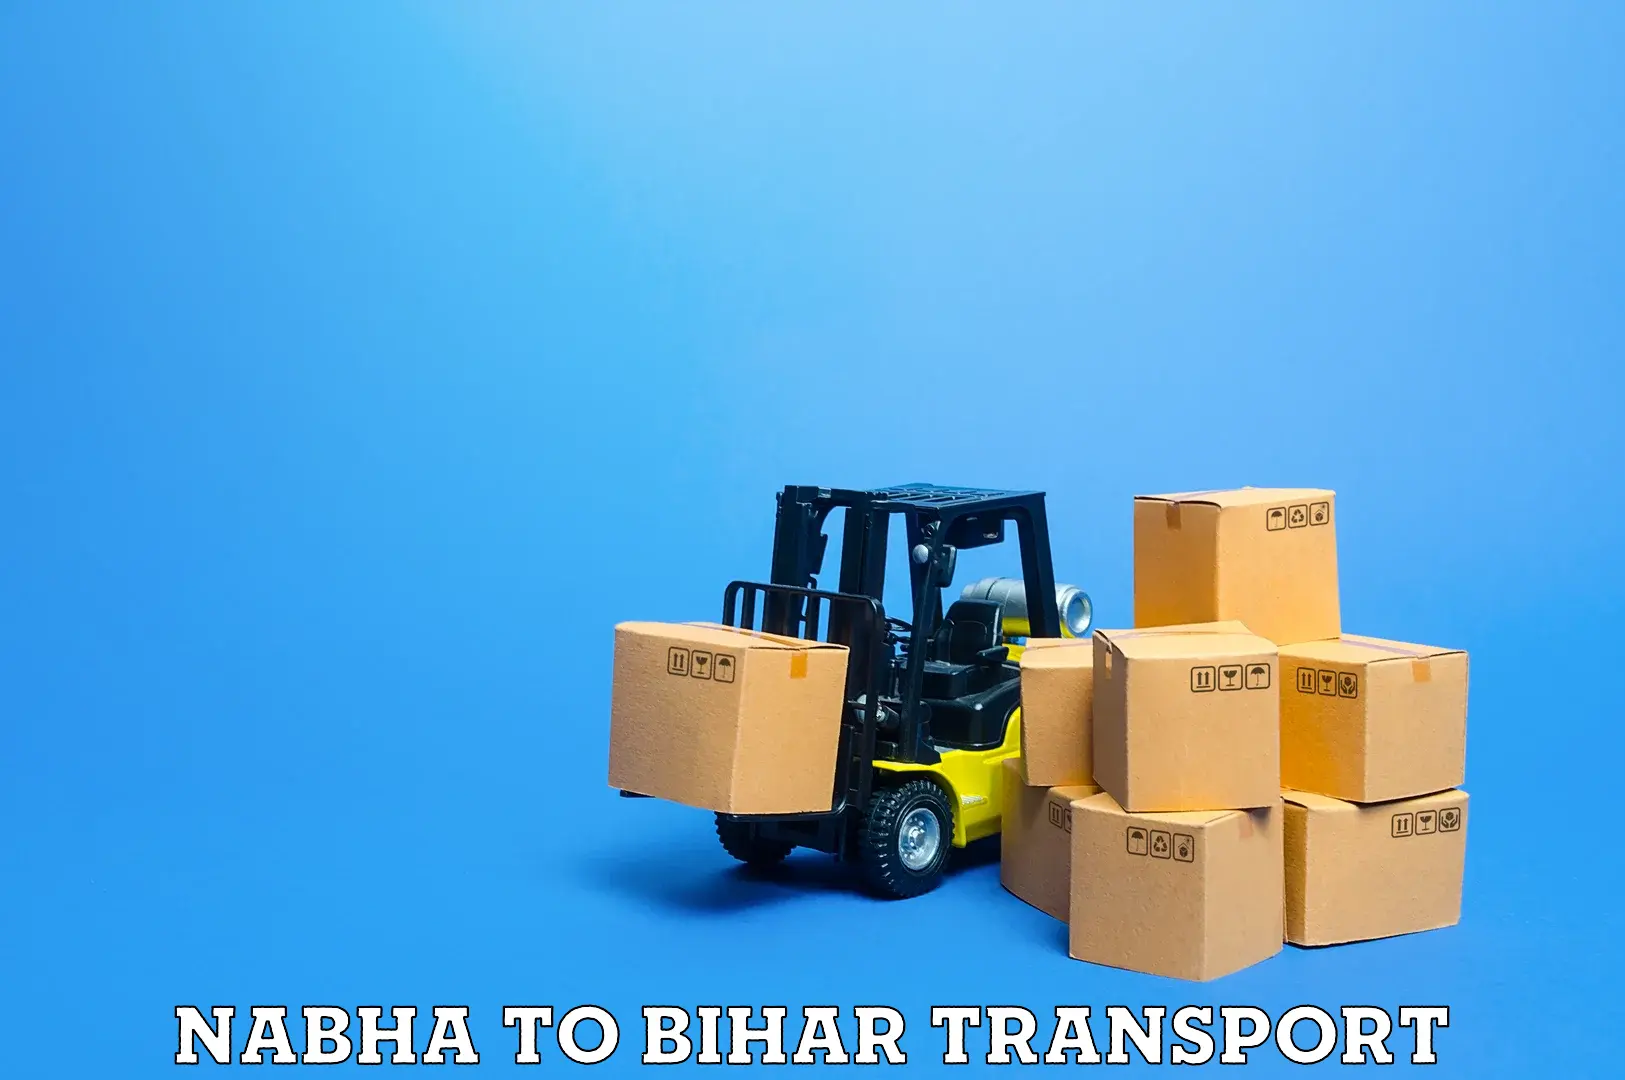 Nearby transport service Nabha to Ekma